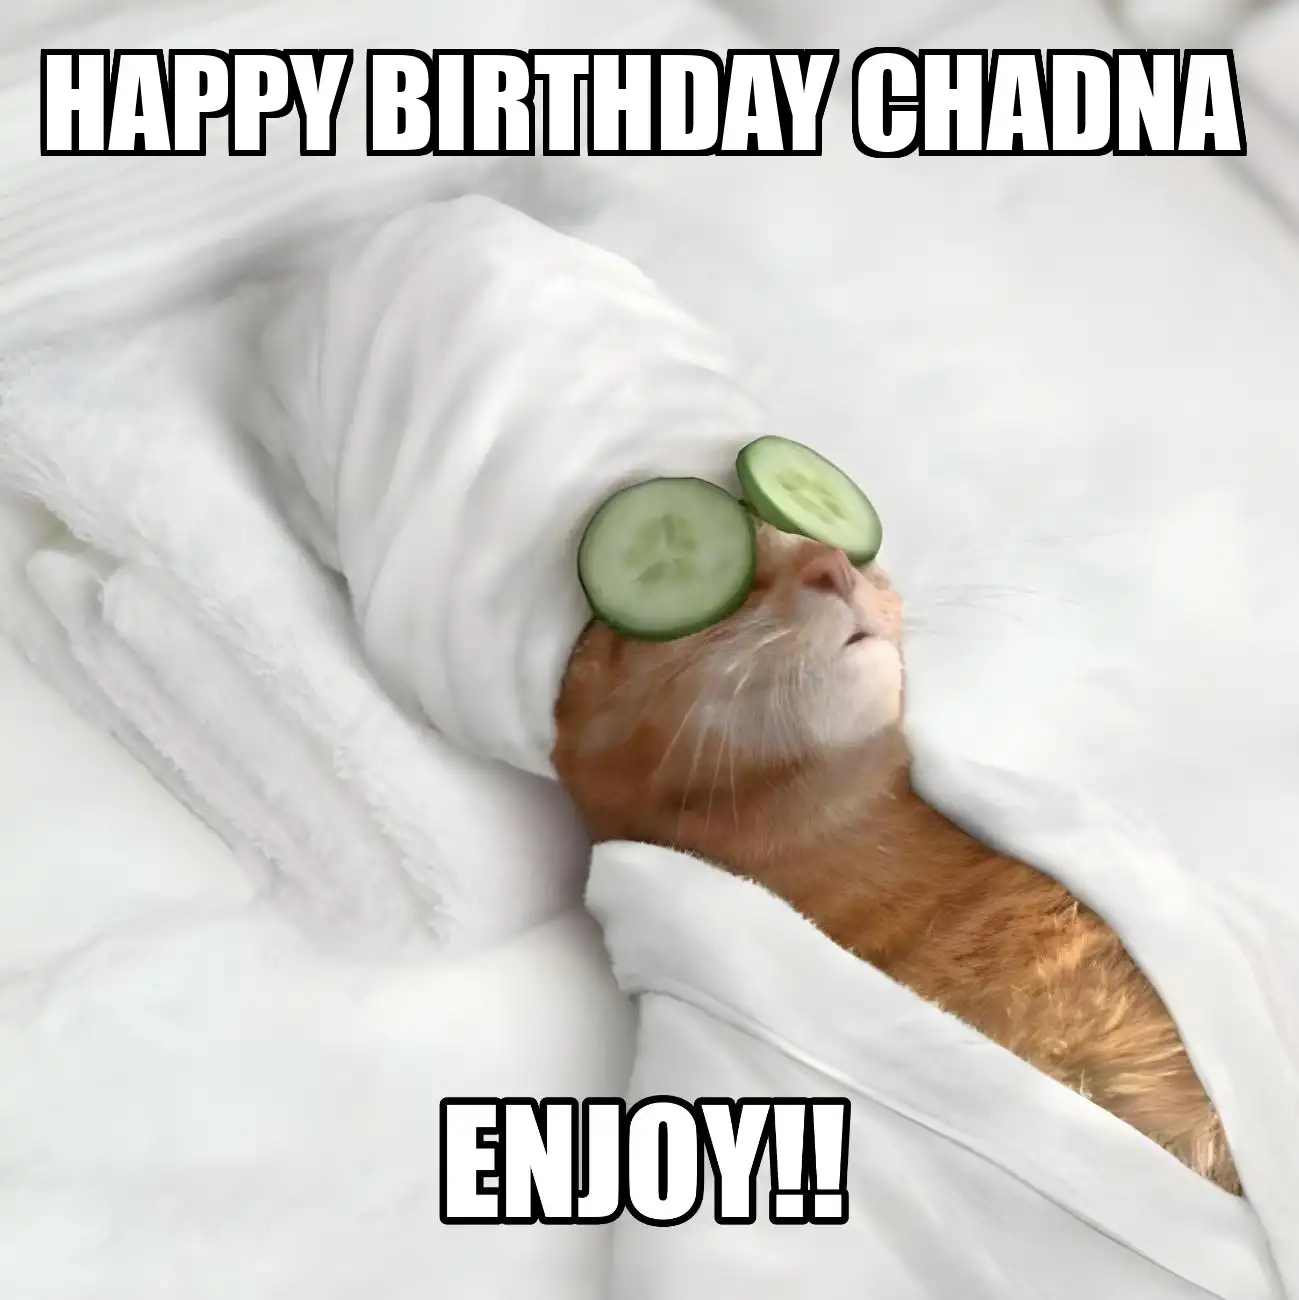 Happy Birthday Chadna Enjoy Cat Meme